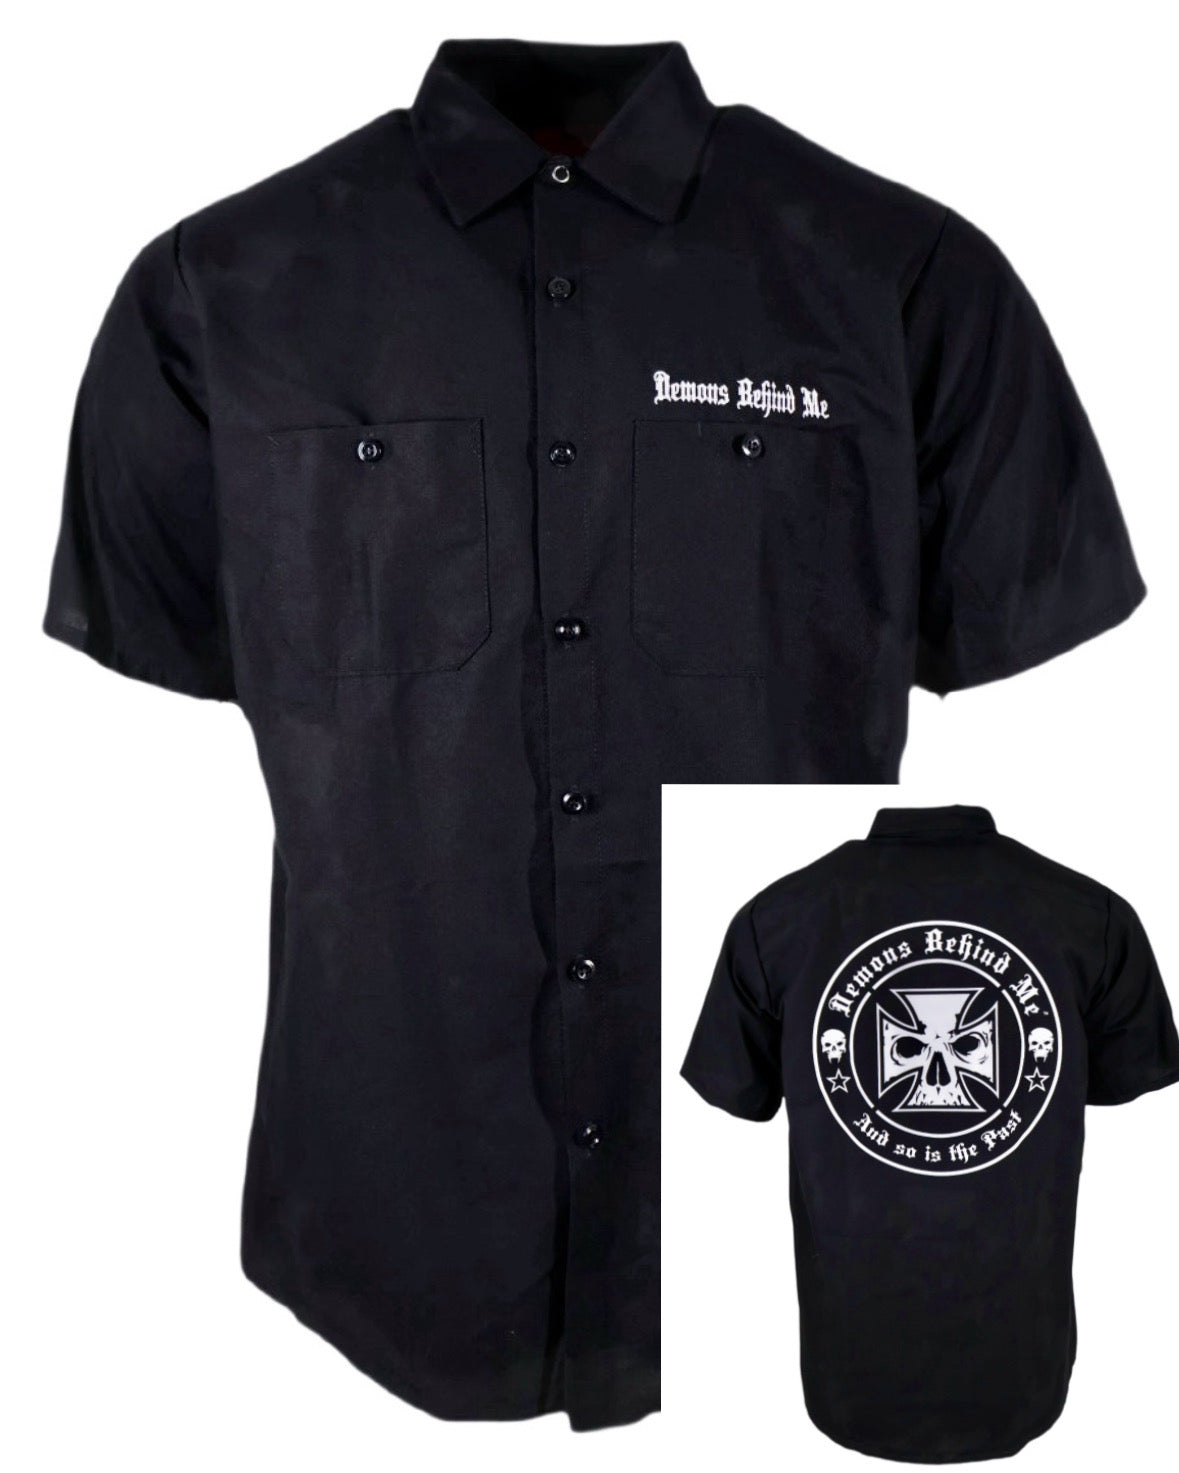 Embroidered Shop Shirt - Men's Short Sleeve Black - White Cross